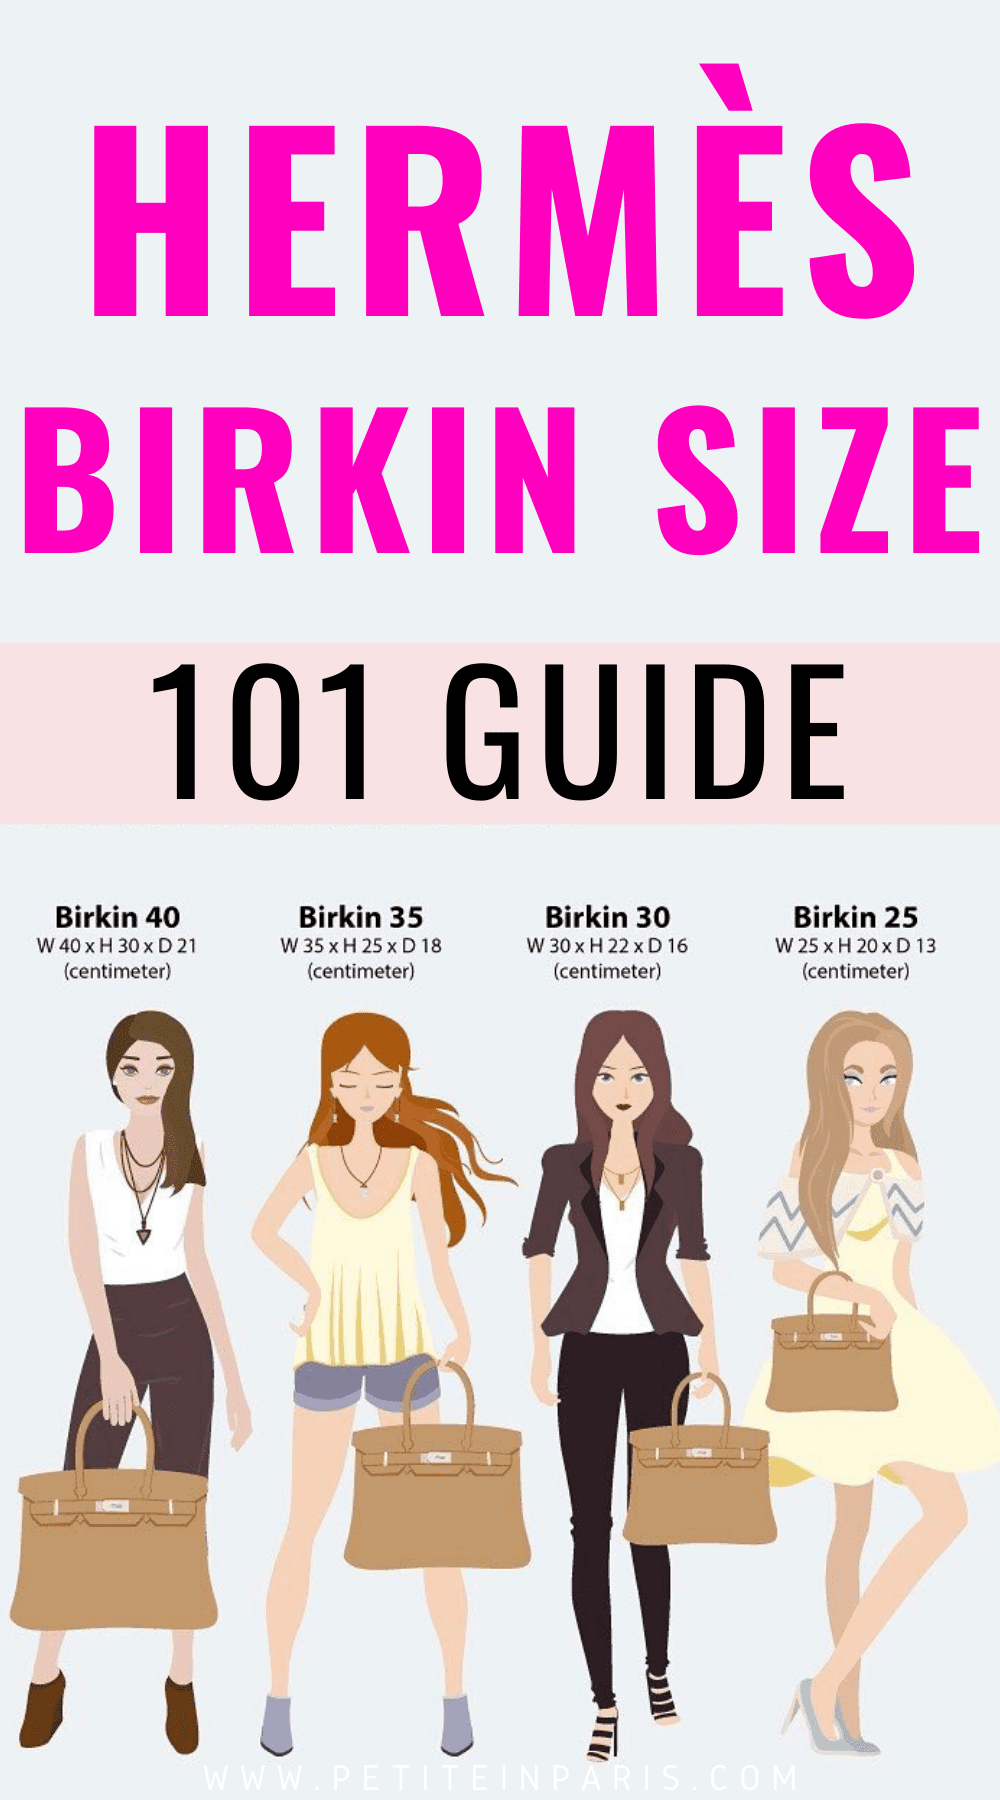 Hermes Birkin Size Guide